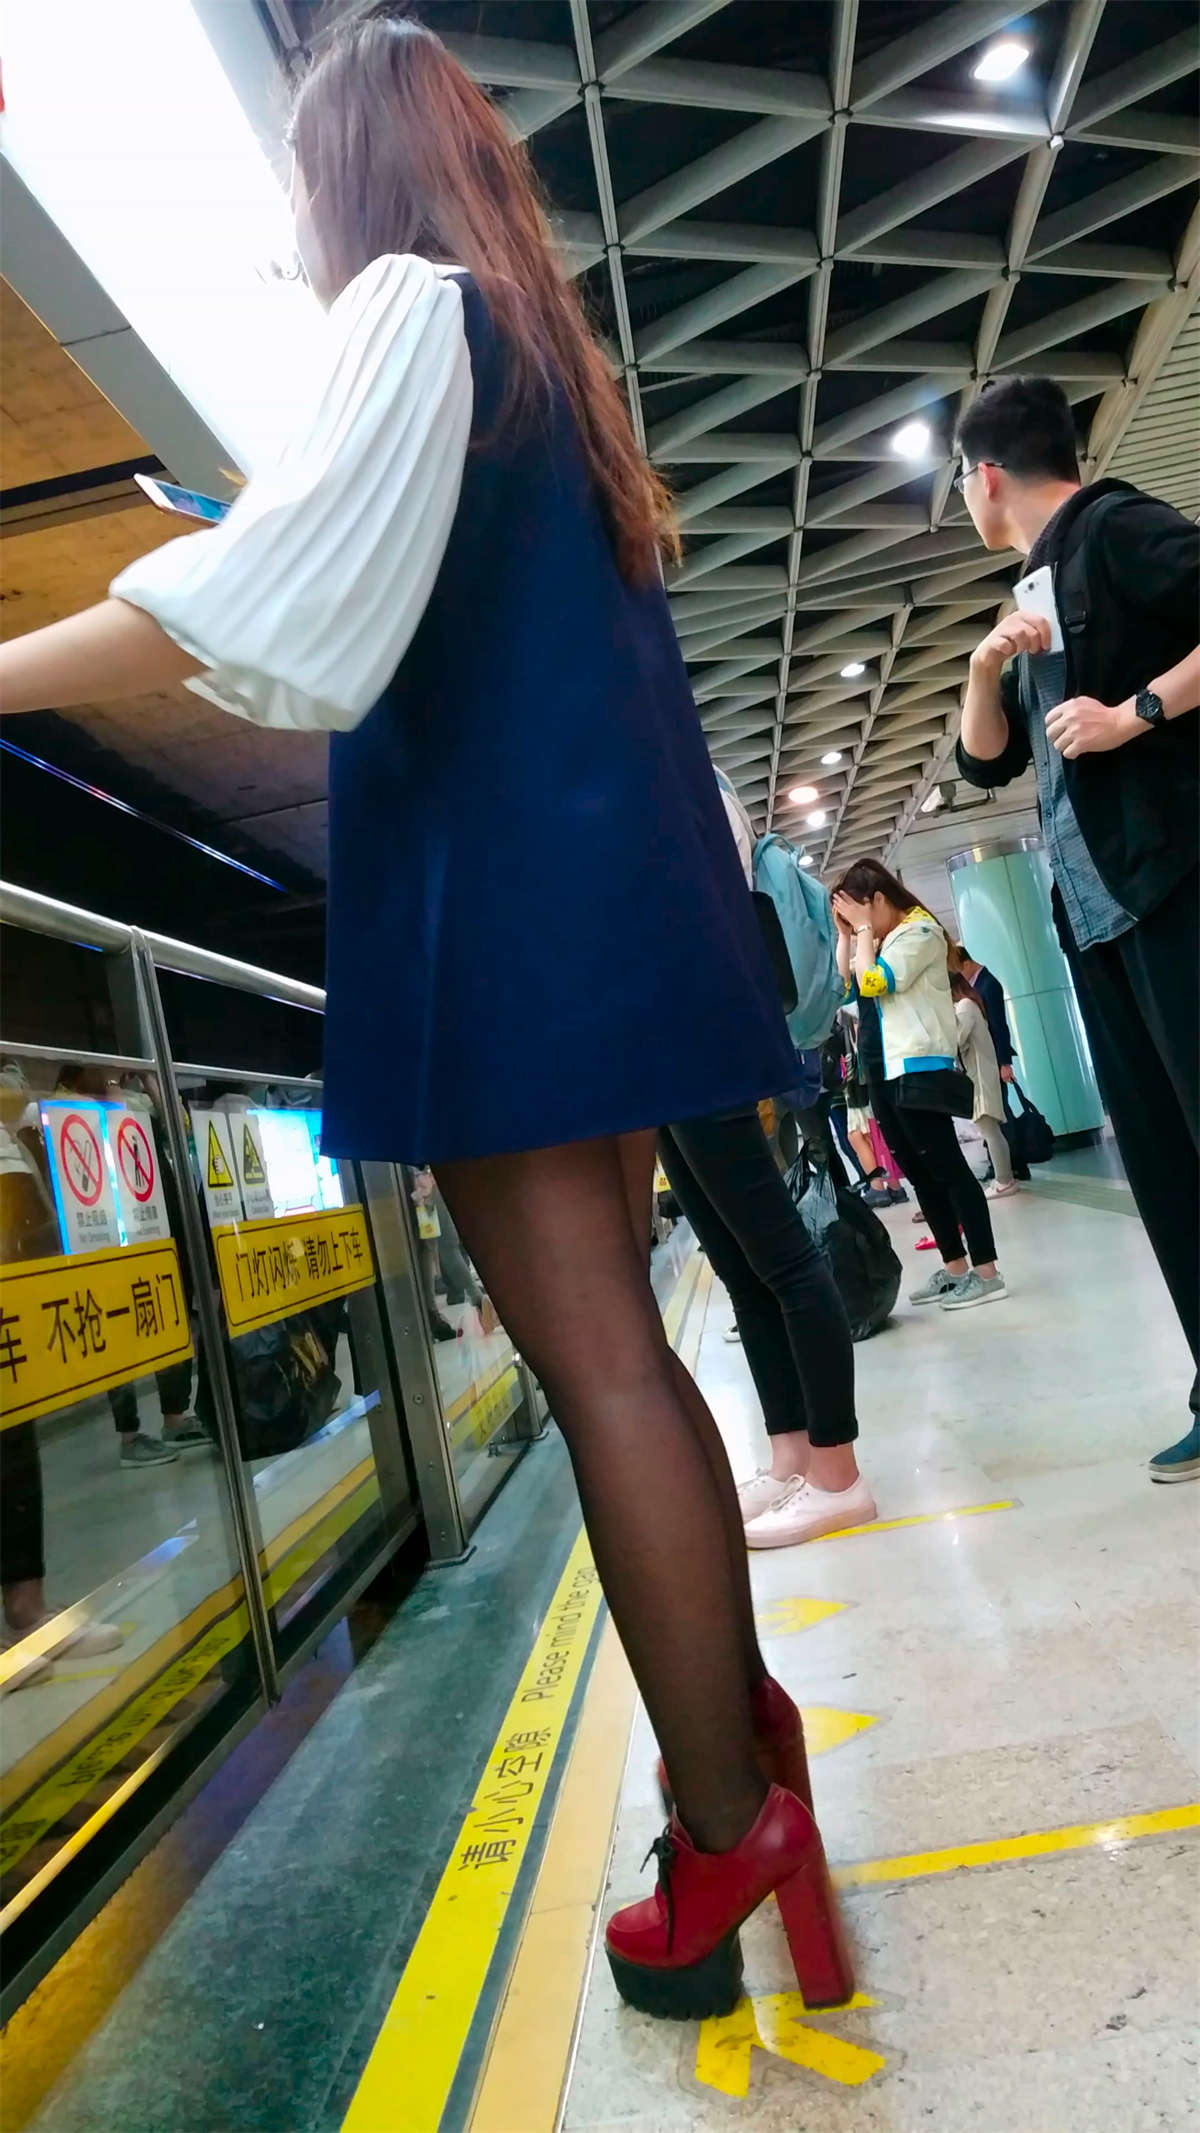 地铁上的极品短裤妹子-魅丝社-专注分享美女写真名站摄影图集